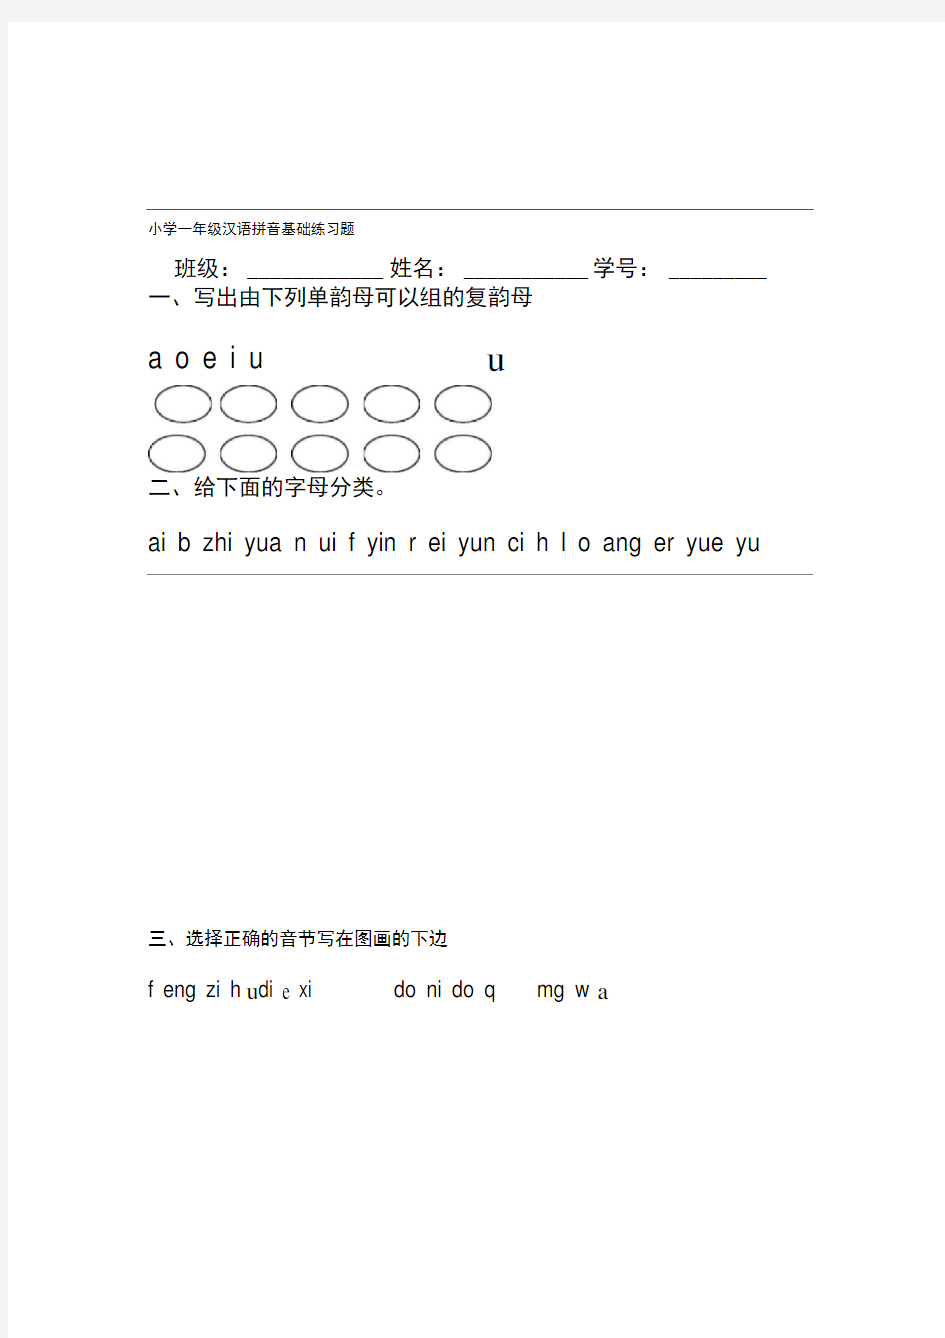 小学一年级汉语拼音基础练习题(合集)(免费下载)